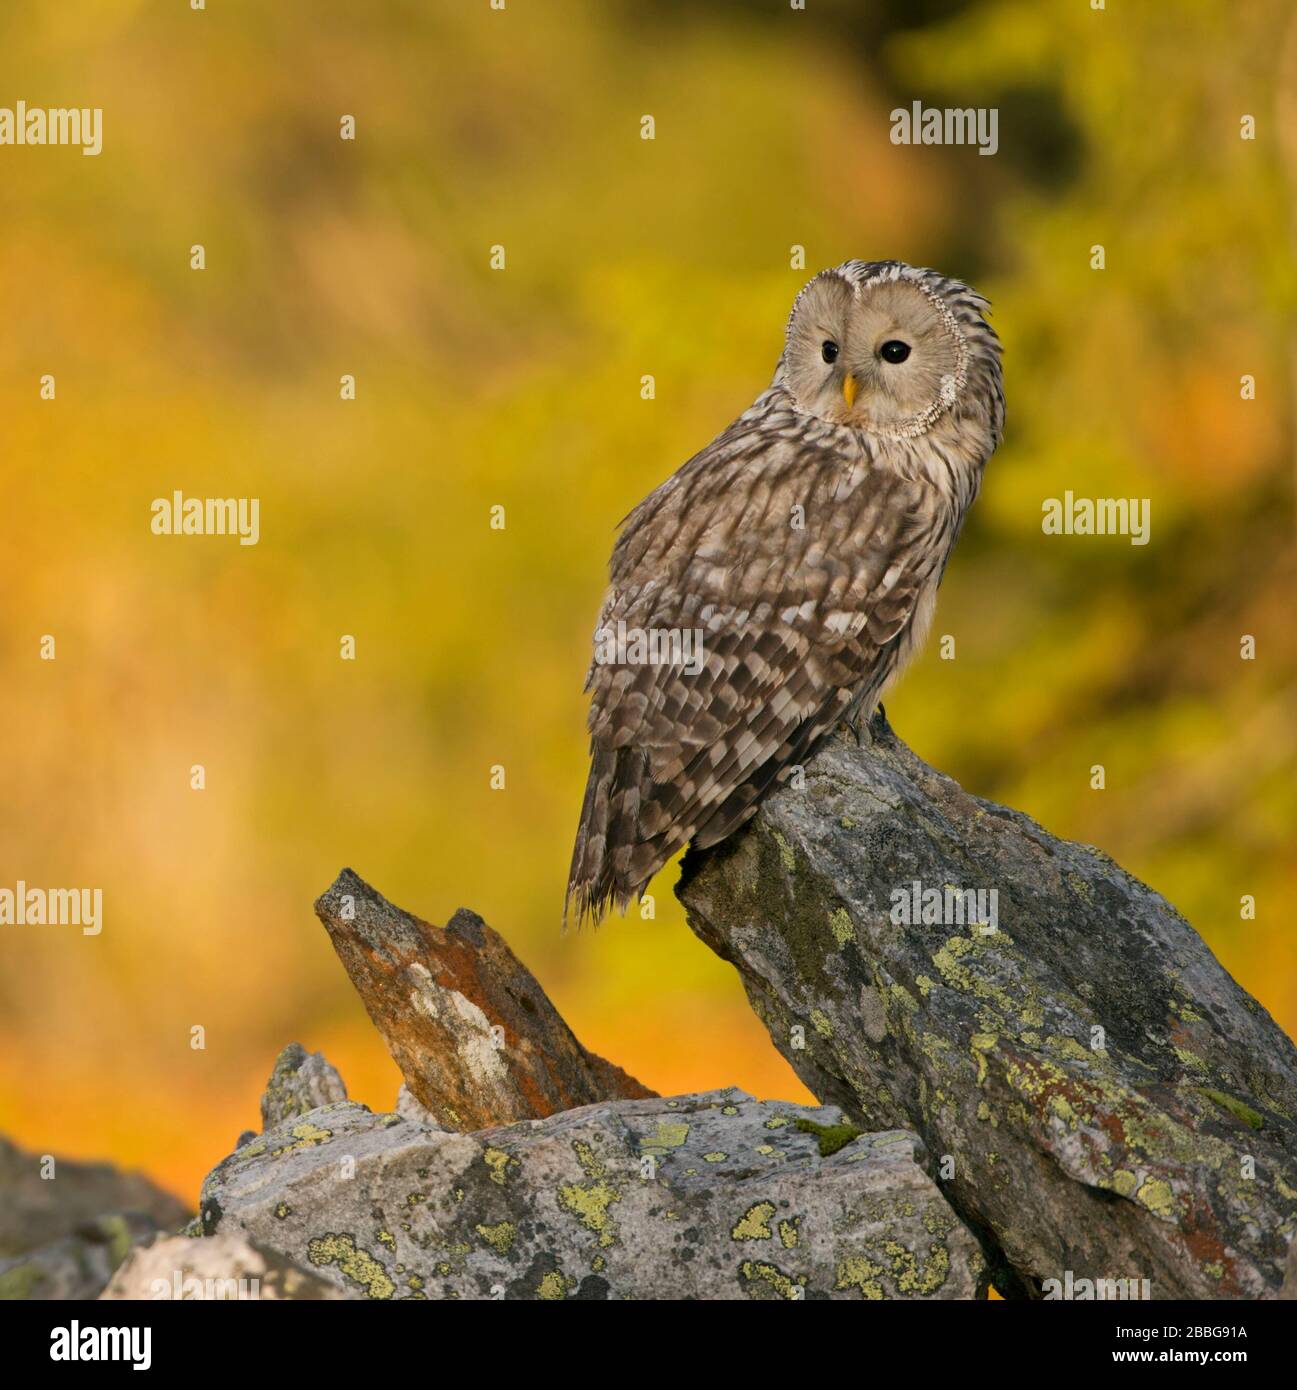 Ural Owl / Habichtskauz ( Strix uralensis ) encaramado sobre una roca, temprano en la mañana, primero la luz del sol brilla en maderas de colores otoñales en el fondo. Foto de stock